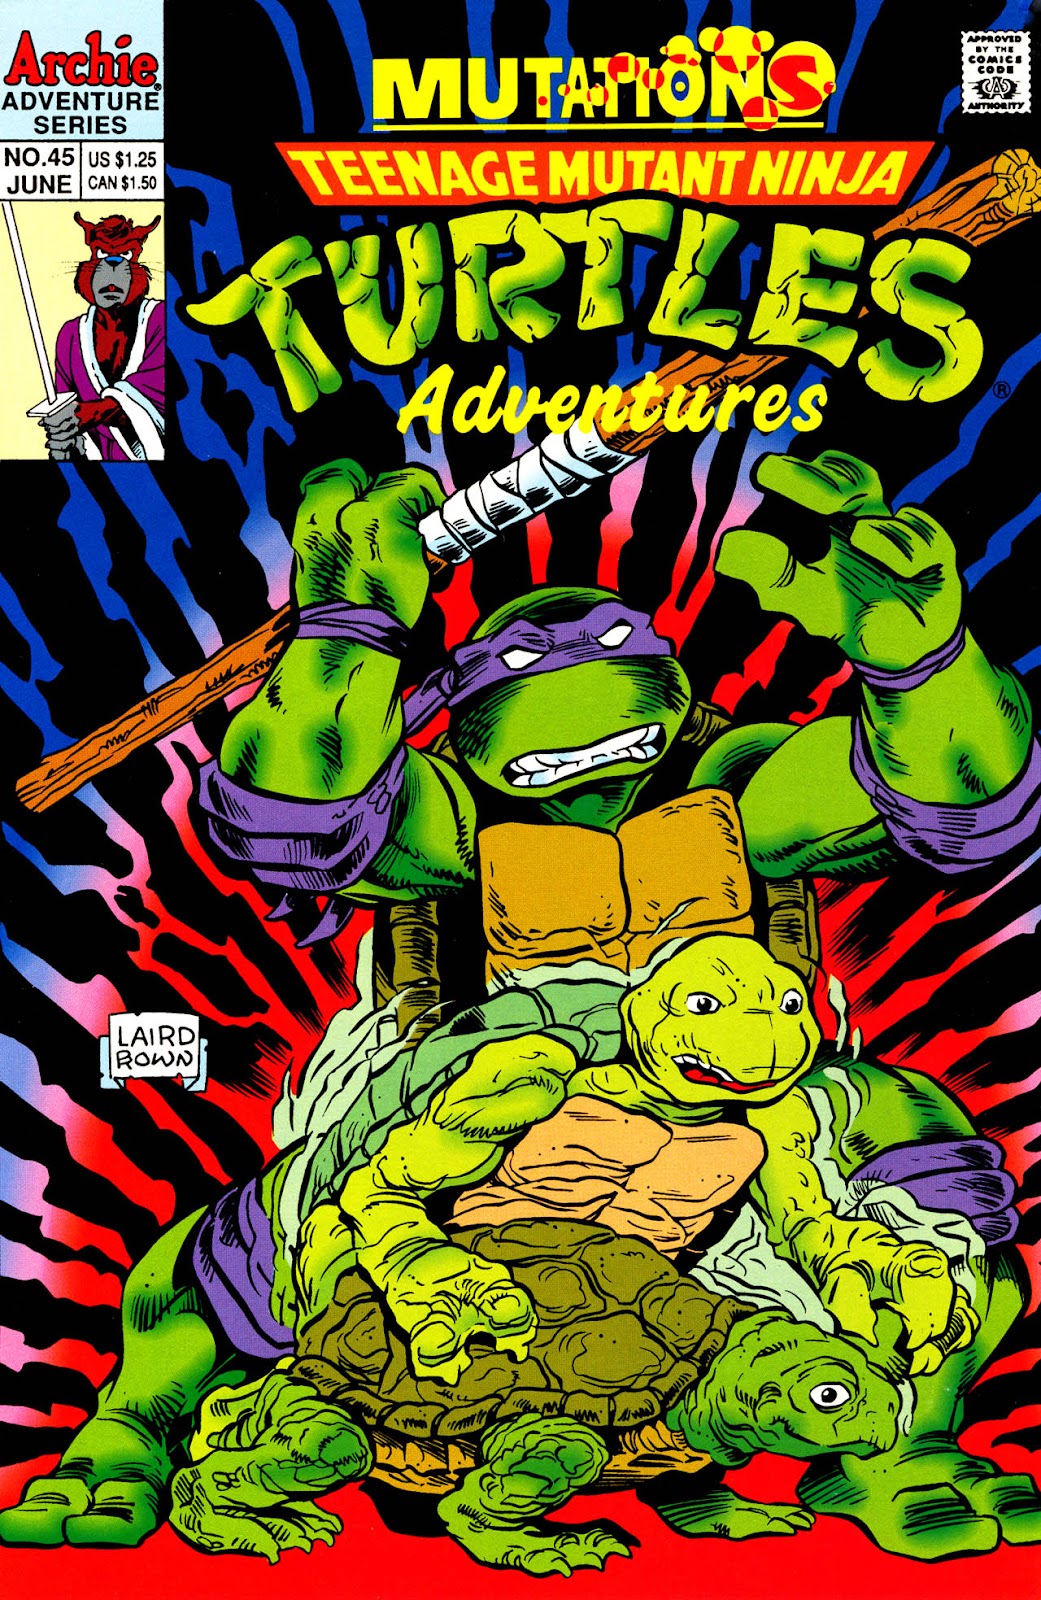 Teenage Mutant Ninja Turtles Adventures (1989) issue 45 - Page 1